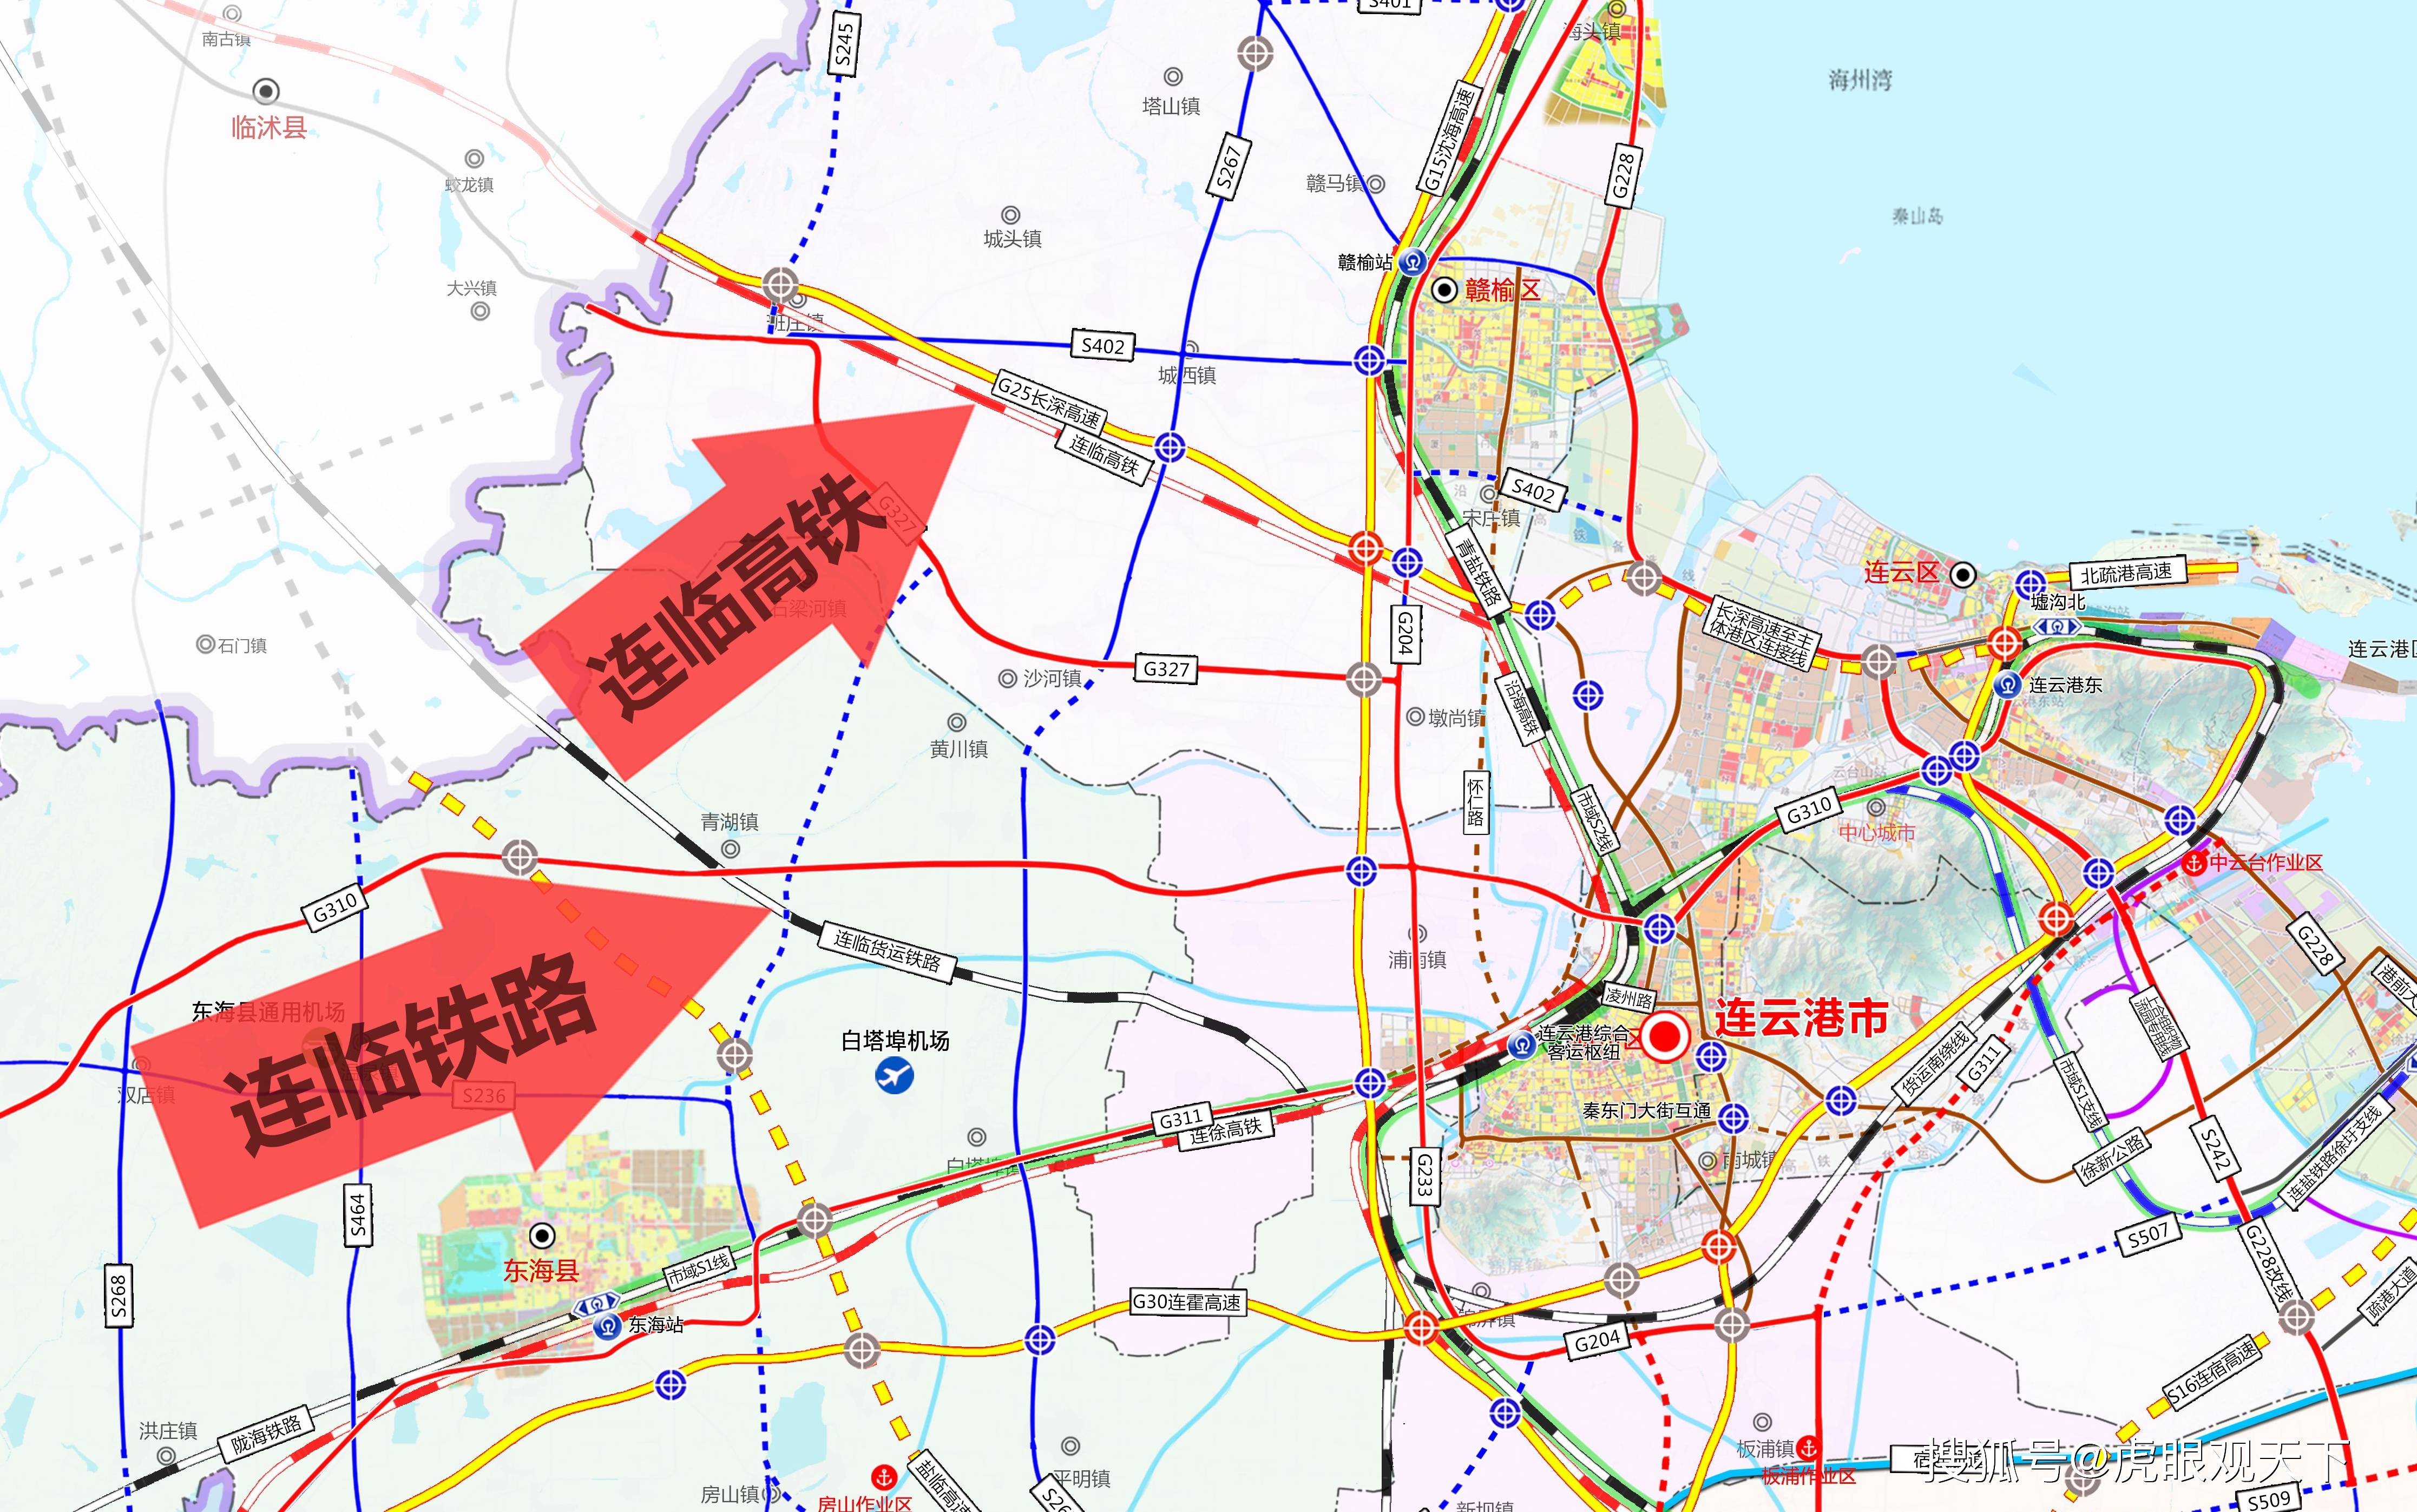 原创未来5年 连云港有哪些铁路新线路规划值得期待?